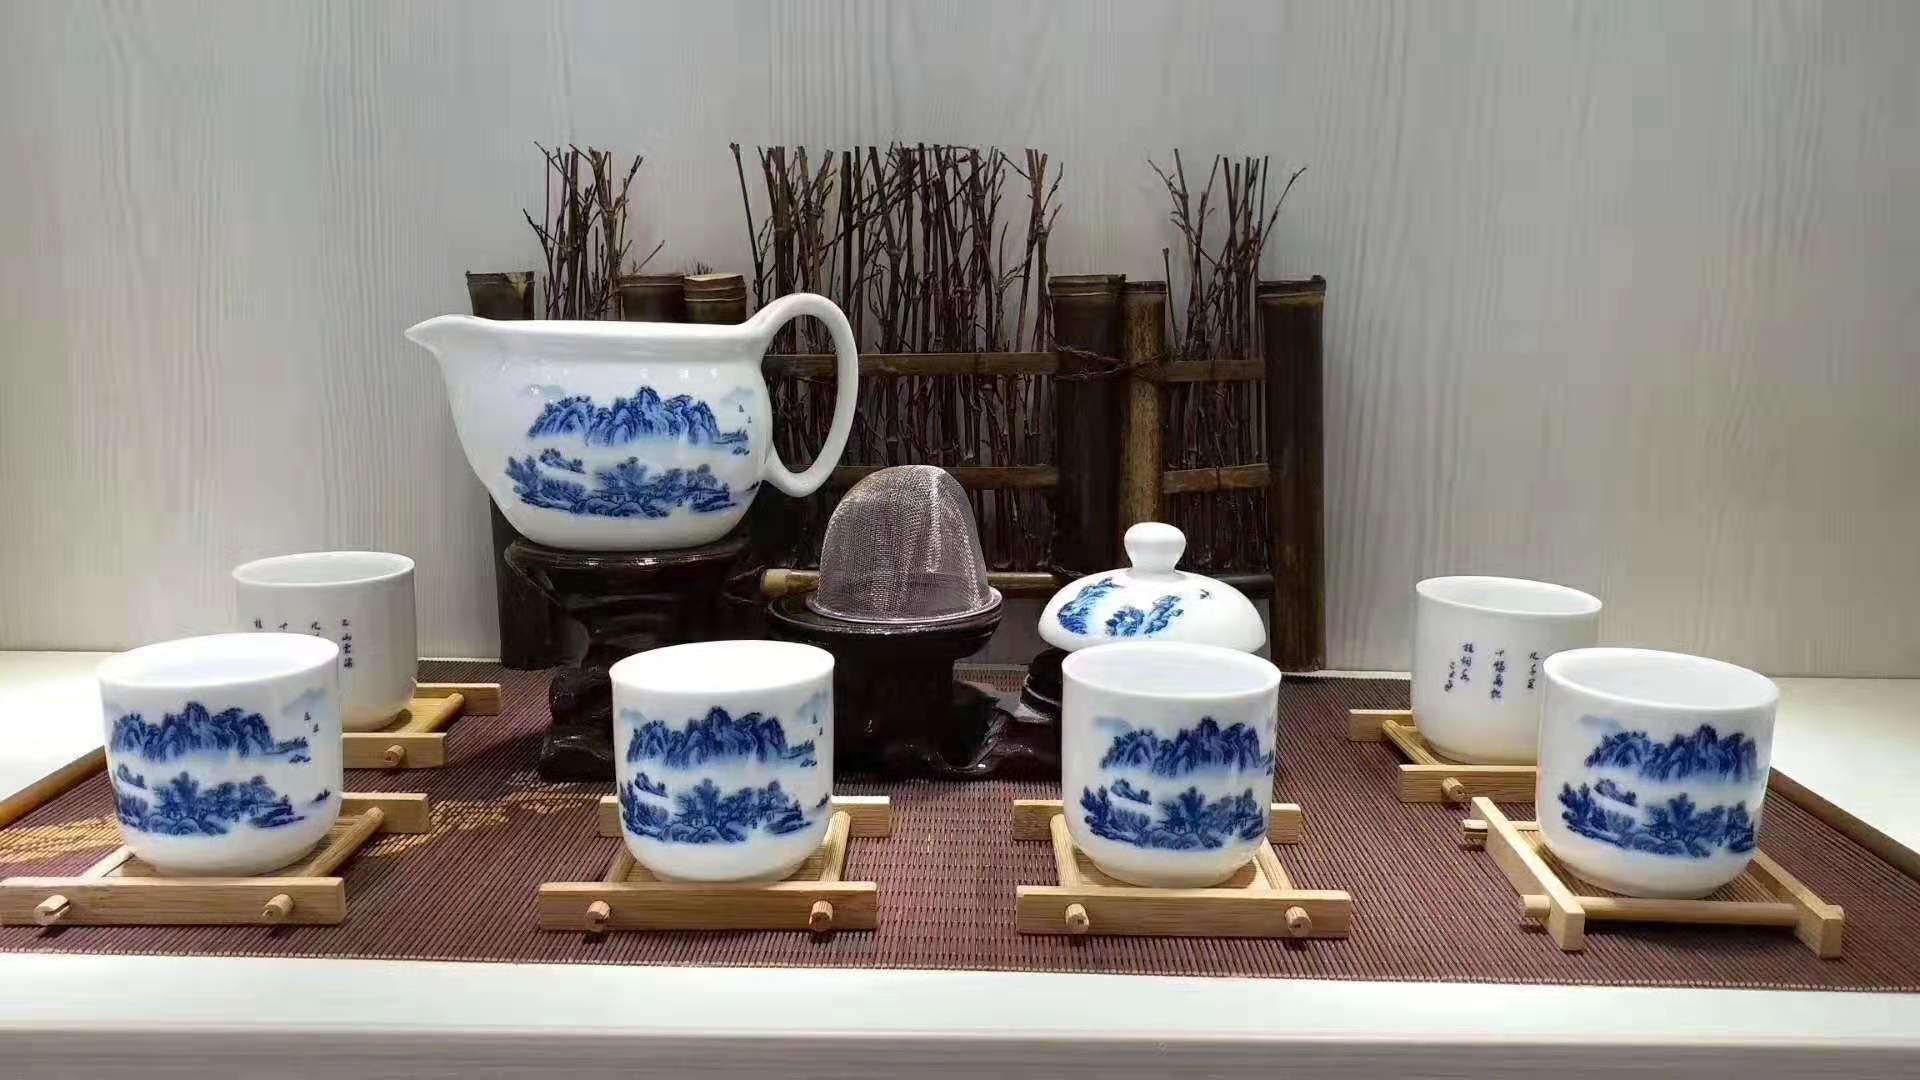 欧式陶瓷茶具套装 过年送景德镇陶瓷茶具礼品 7头印花陶瓷茶具 陶瓷套装定制logo